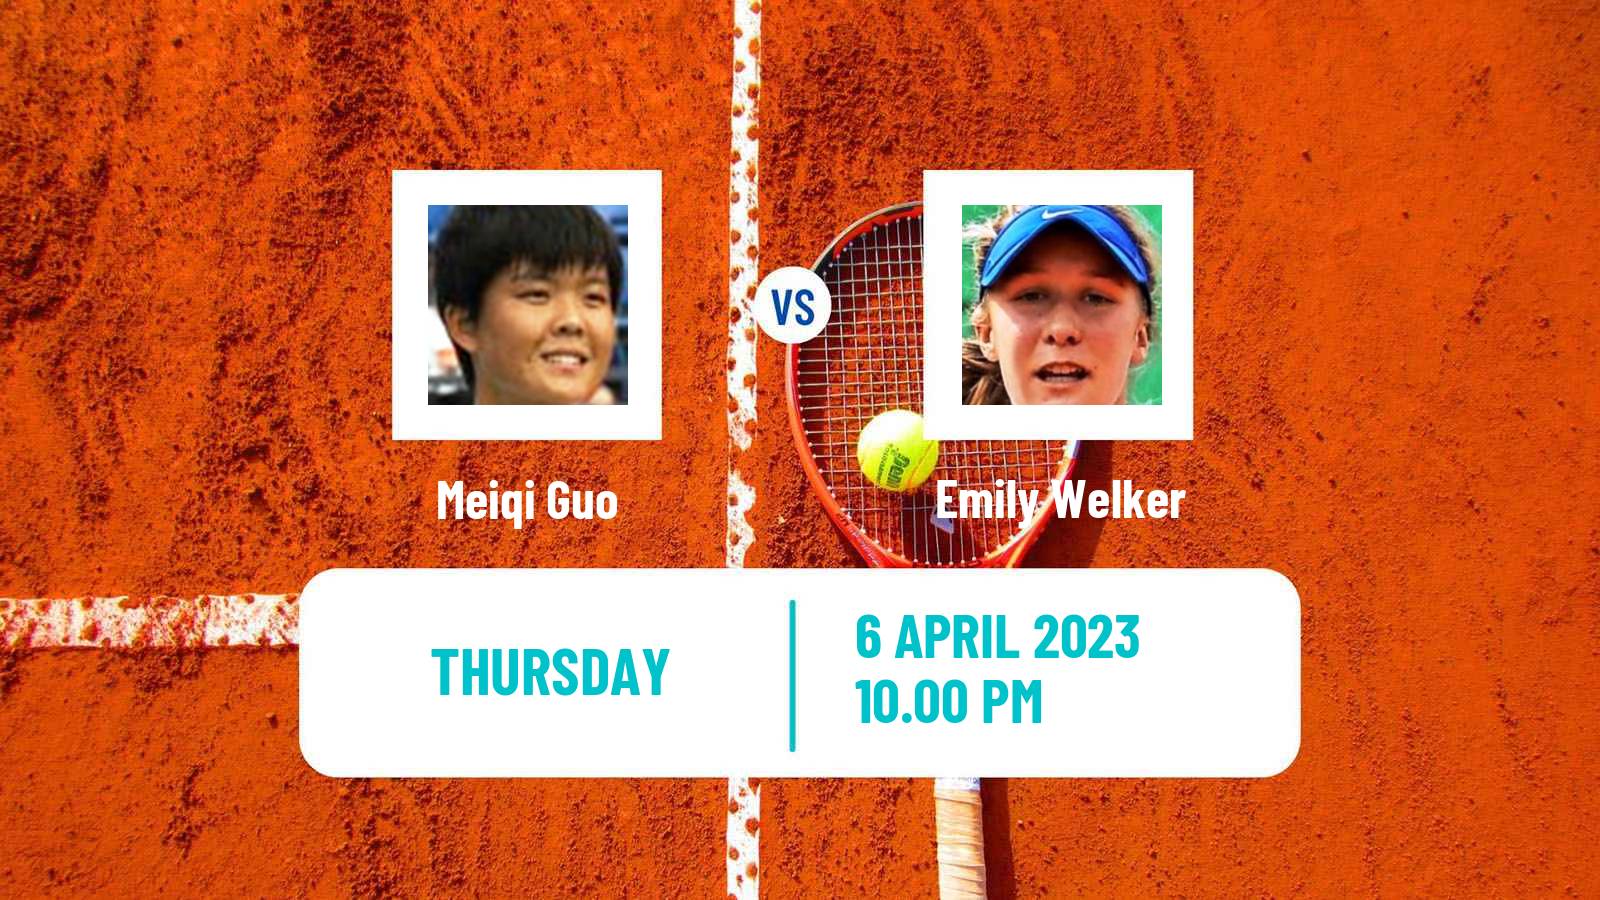 Tennis ITF Tournaments Meiqi Guo - Emily Welker